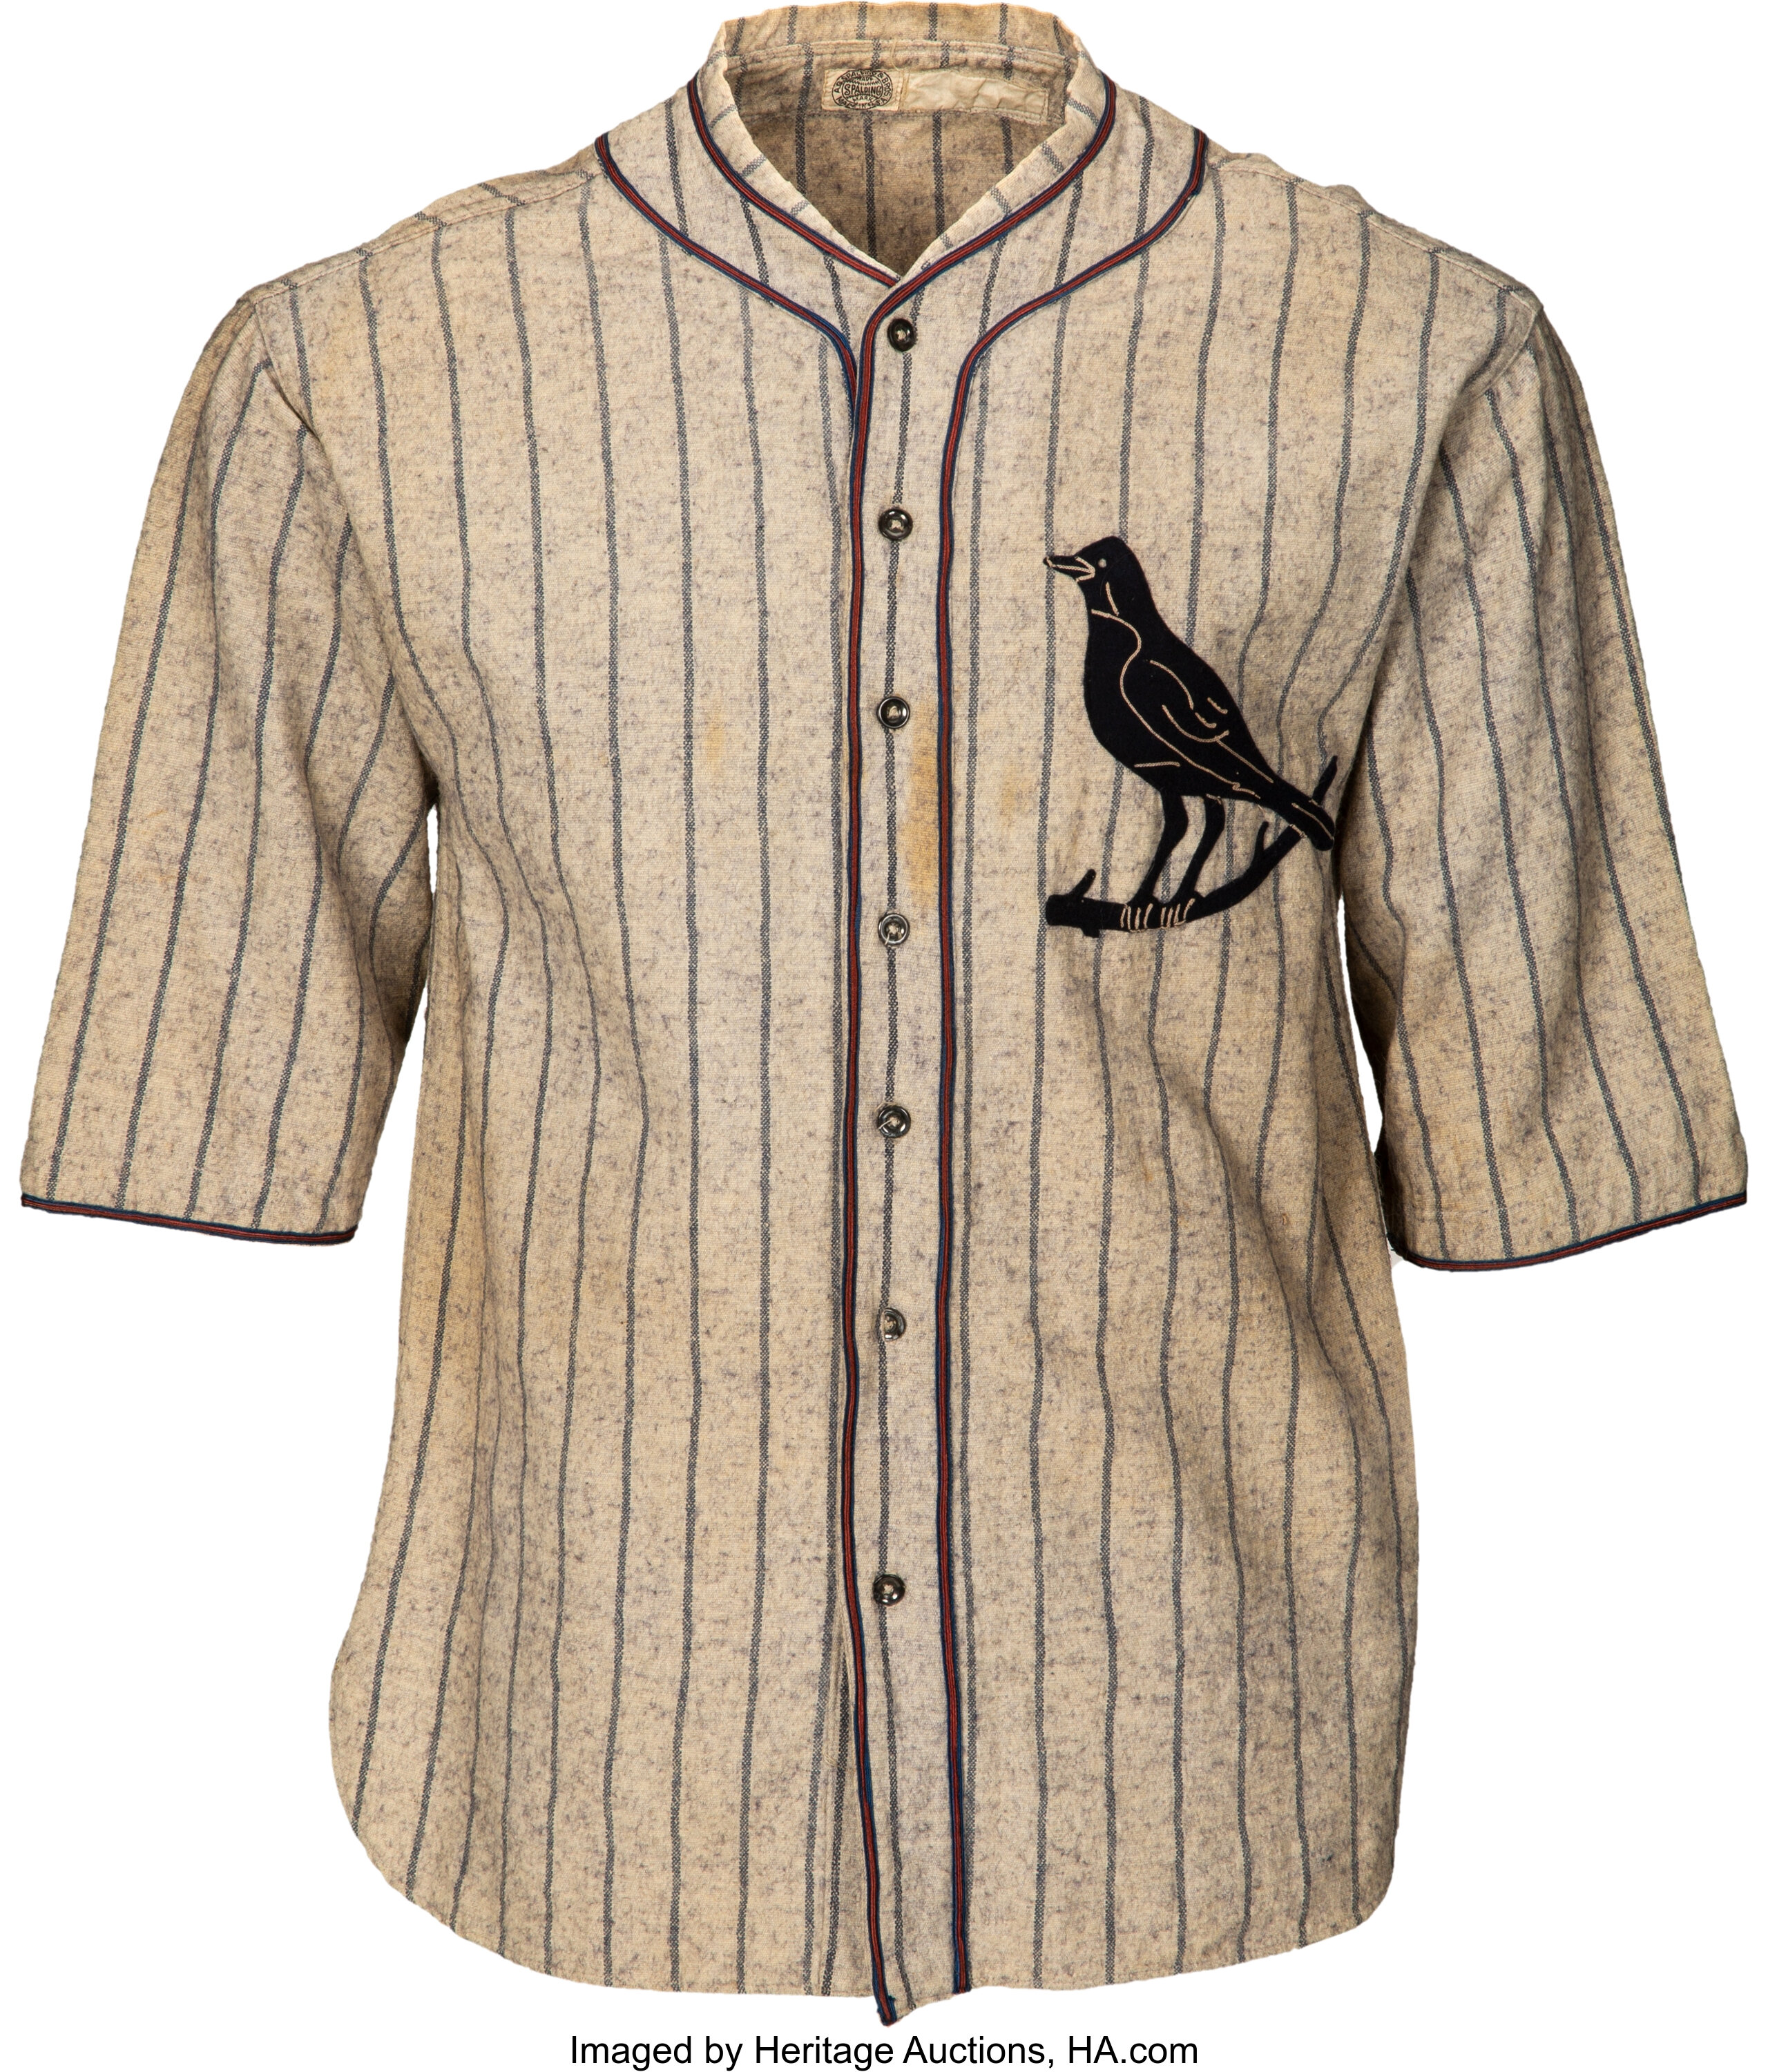 75 Flannel Jerseys ideas  vintage baseball, baseball jerseys, flannel